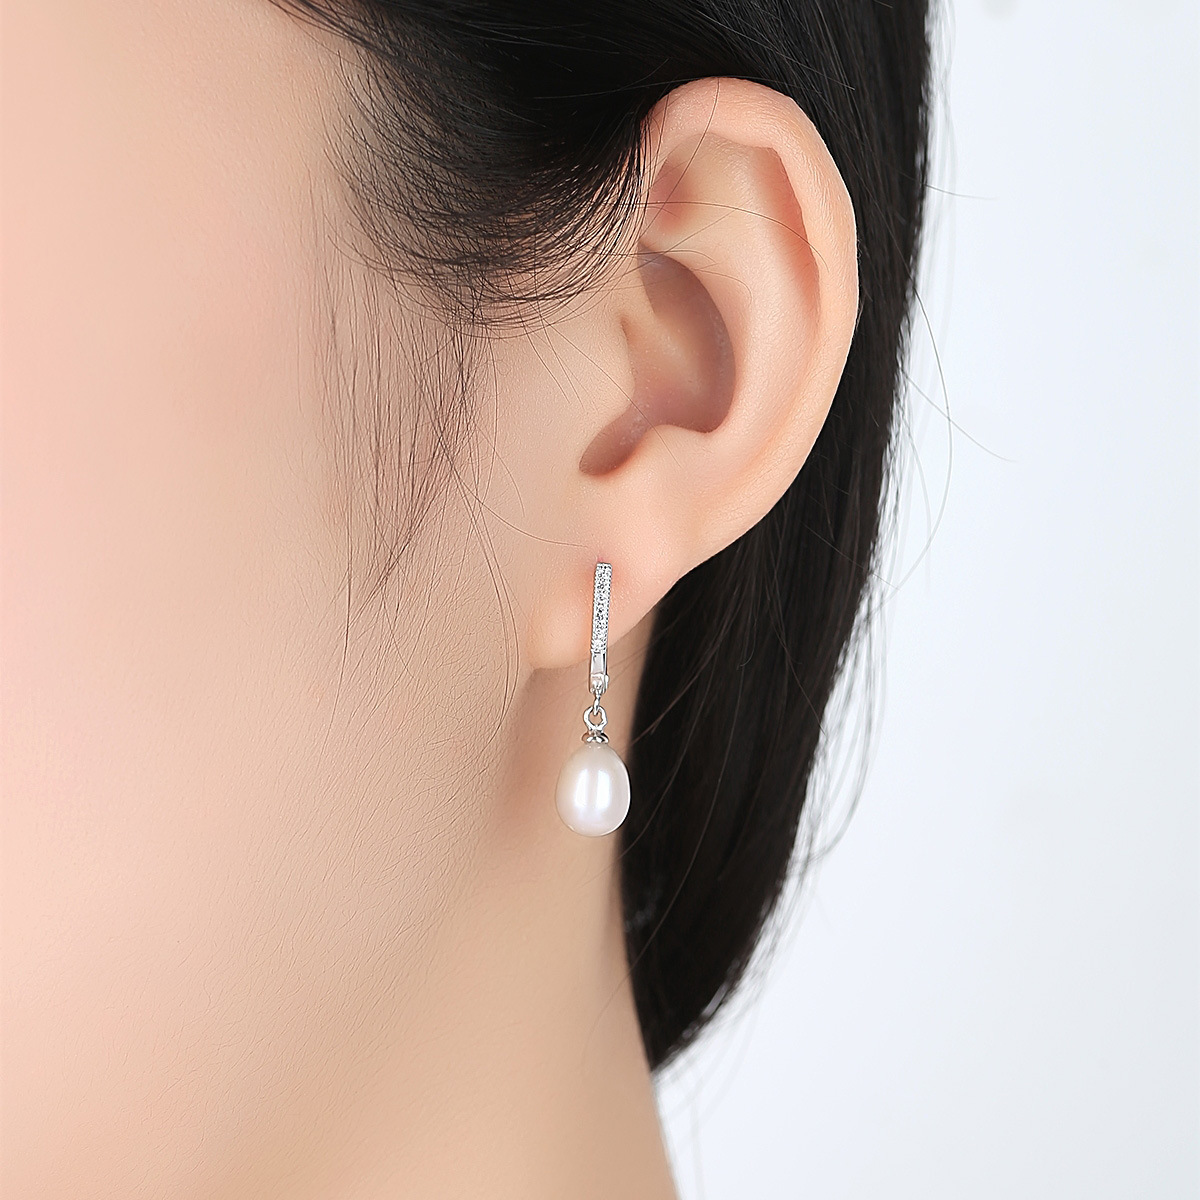 3a Cz 8-9Mm Freshwater Pearl Sterling Silver Earrings